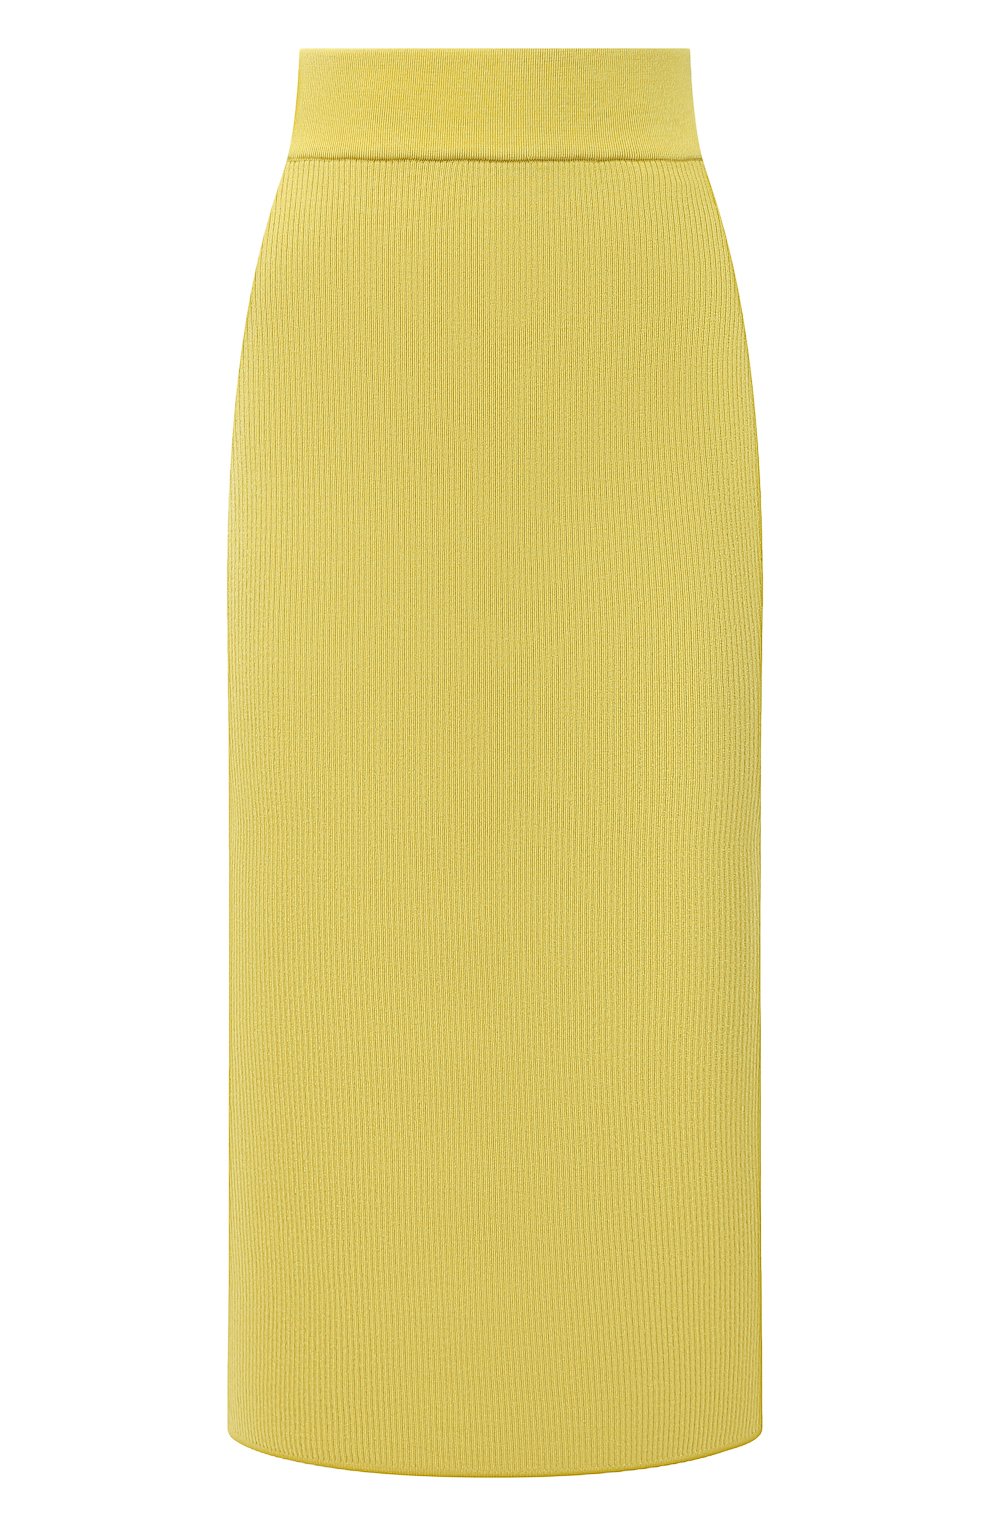 Женская юбка из кашемира и шелка TOM FORD желтого цвета, арт. GCK097-YAX320 | Фото 1 (Материал внешний: Шерсть, Кашемир; Стили: Гламурный; Кросс-КТ: Трикотаж; Женское Кросс-КТ: Юбка-одежда; Длина Ж (юбки, платья, шорты): Миди)